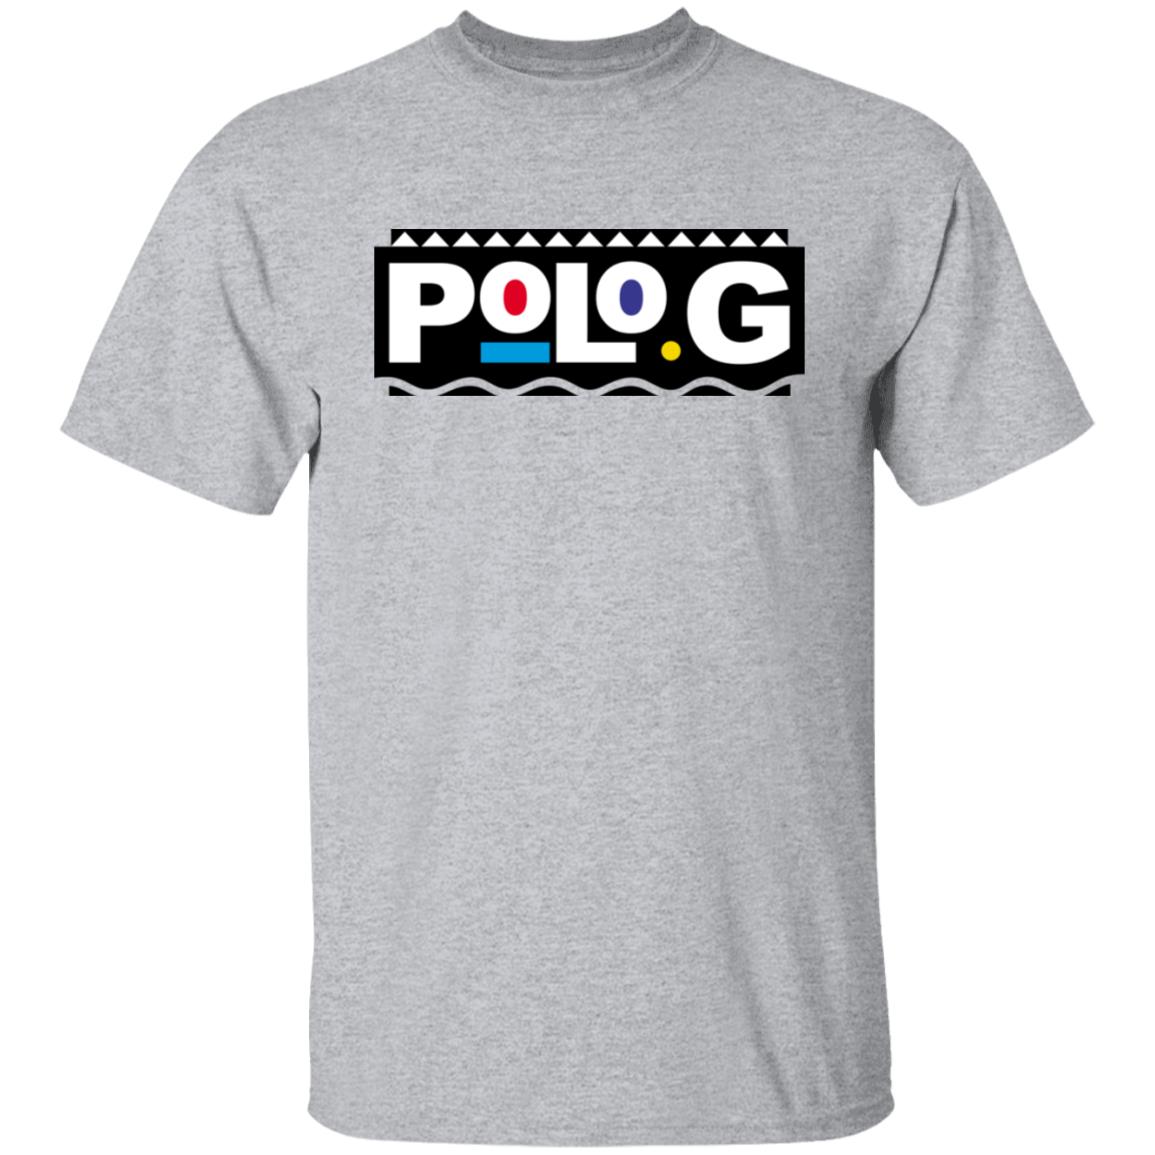 Polo G Merch Store Polo G Shirt